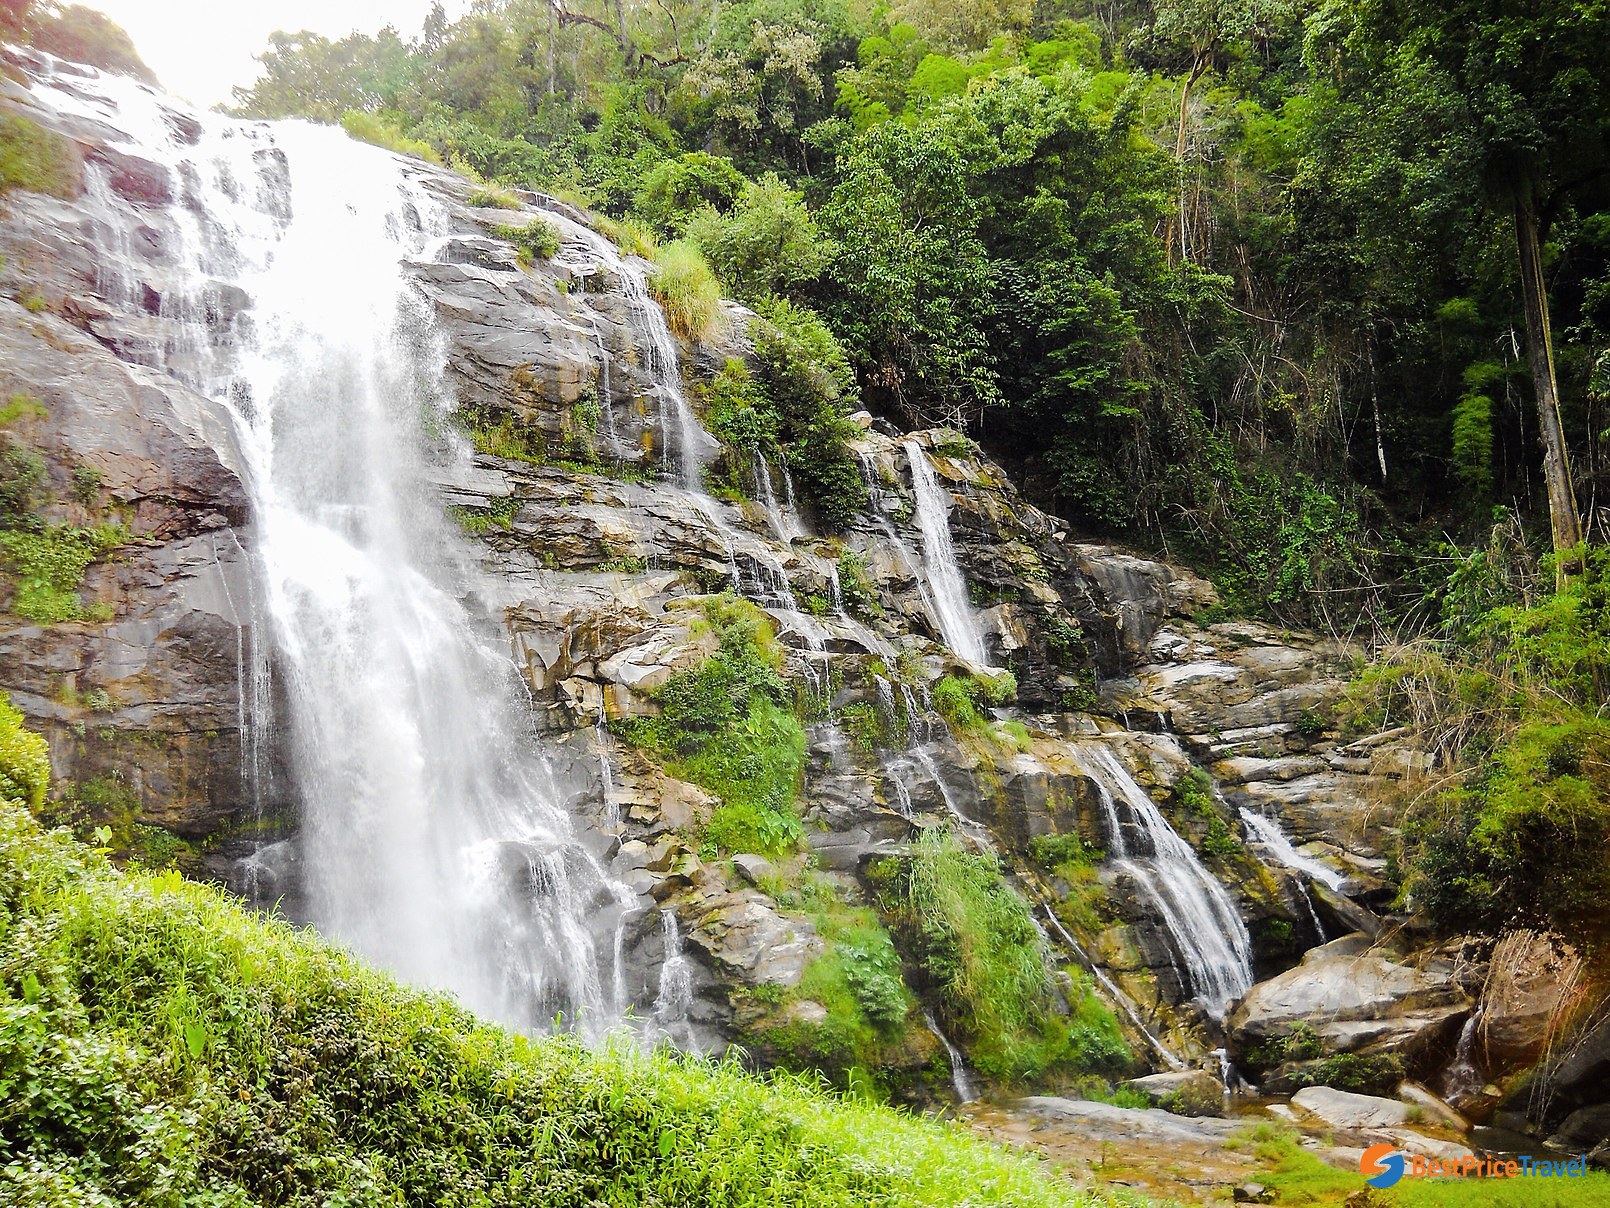 Namtok Mae Klang Waterfall at Doi Inthanon